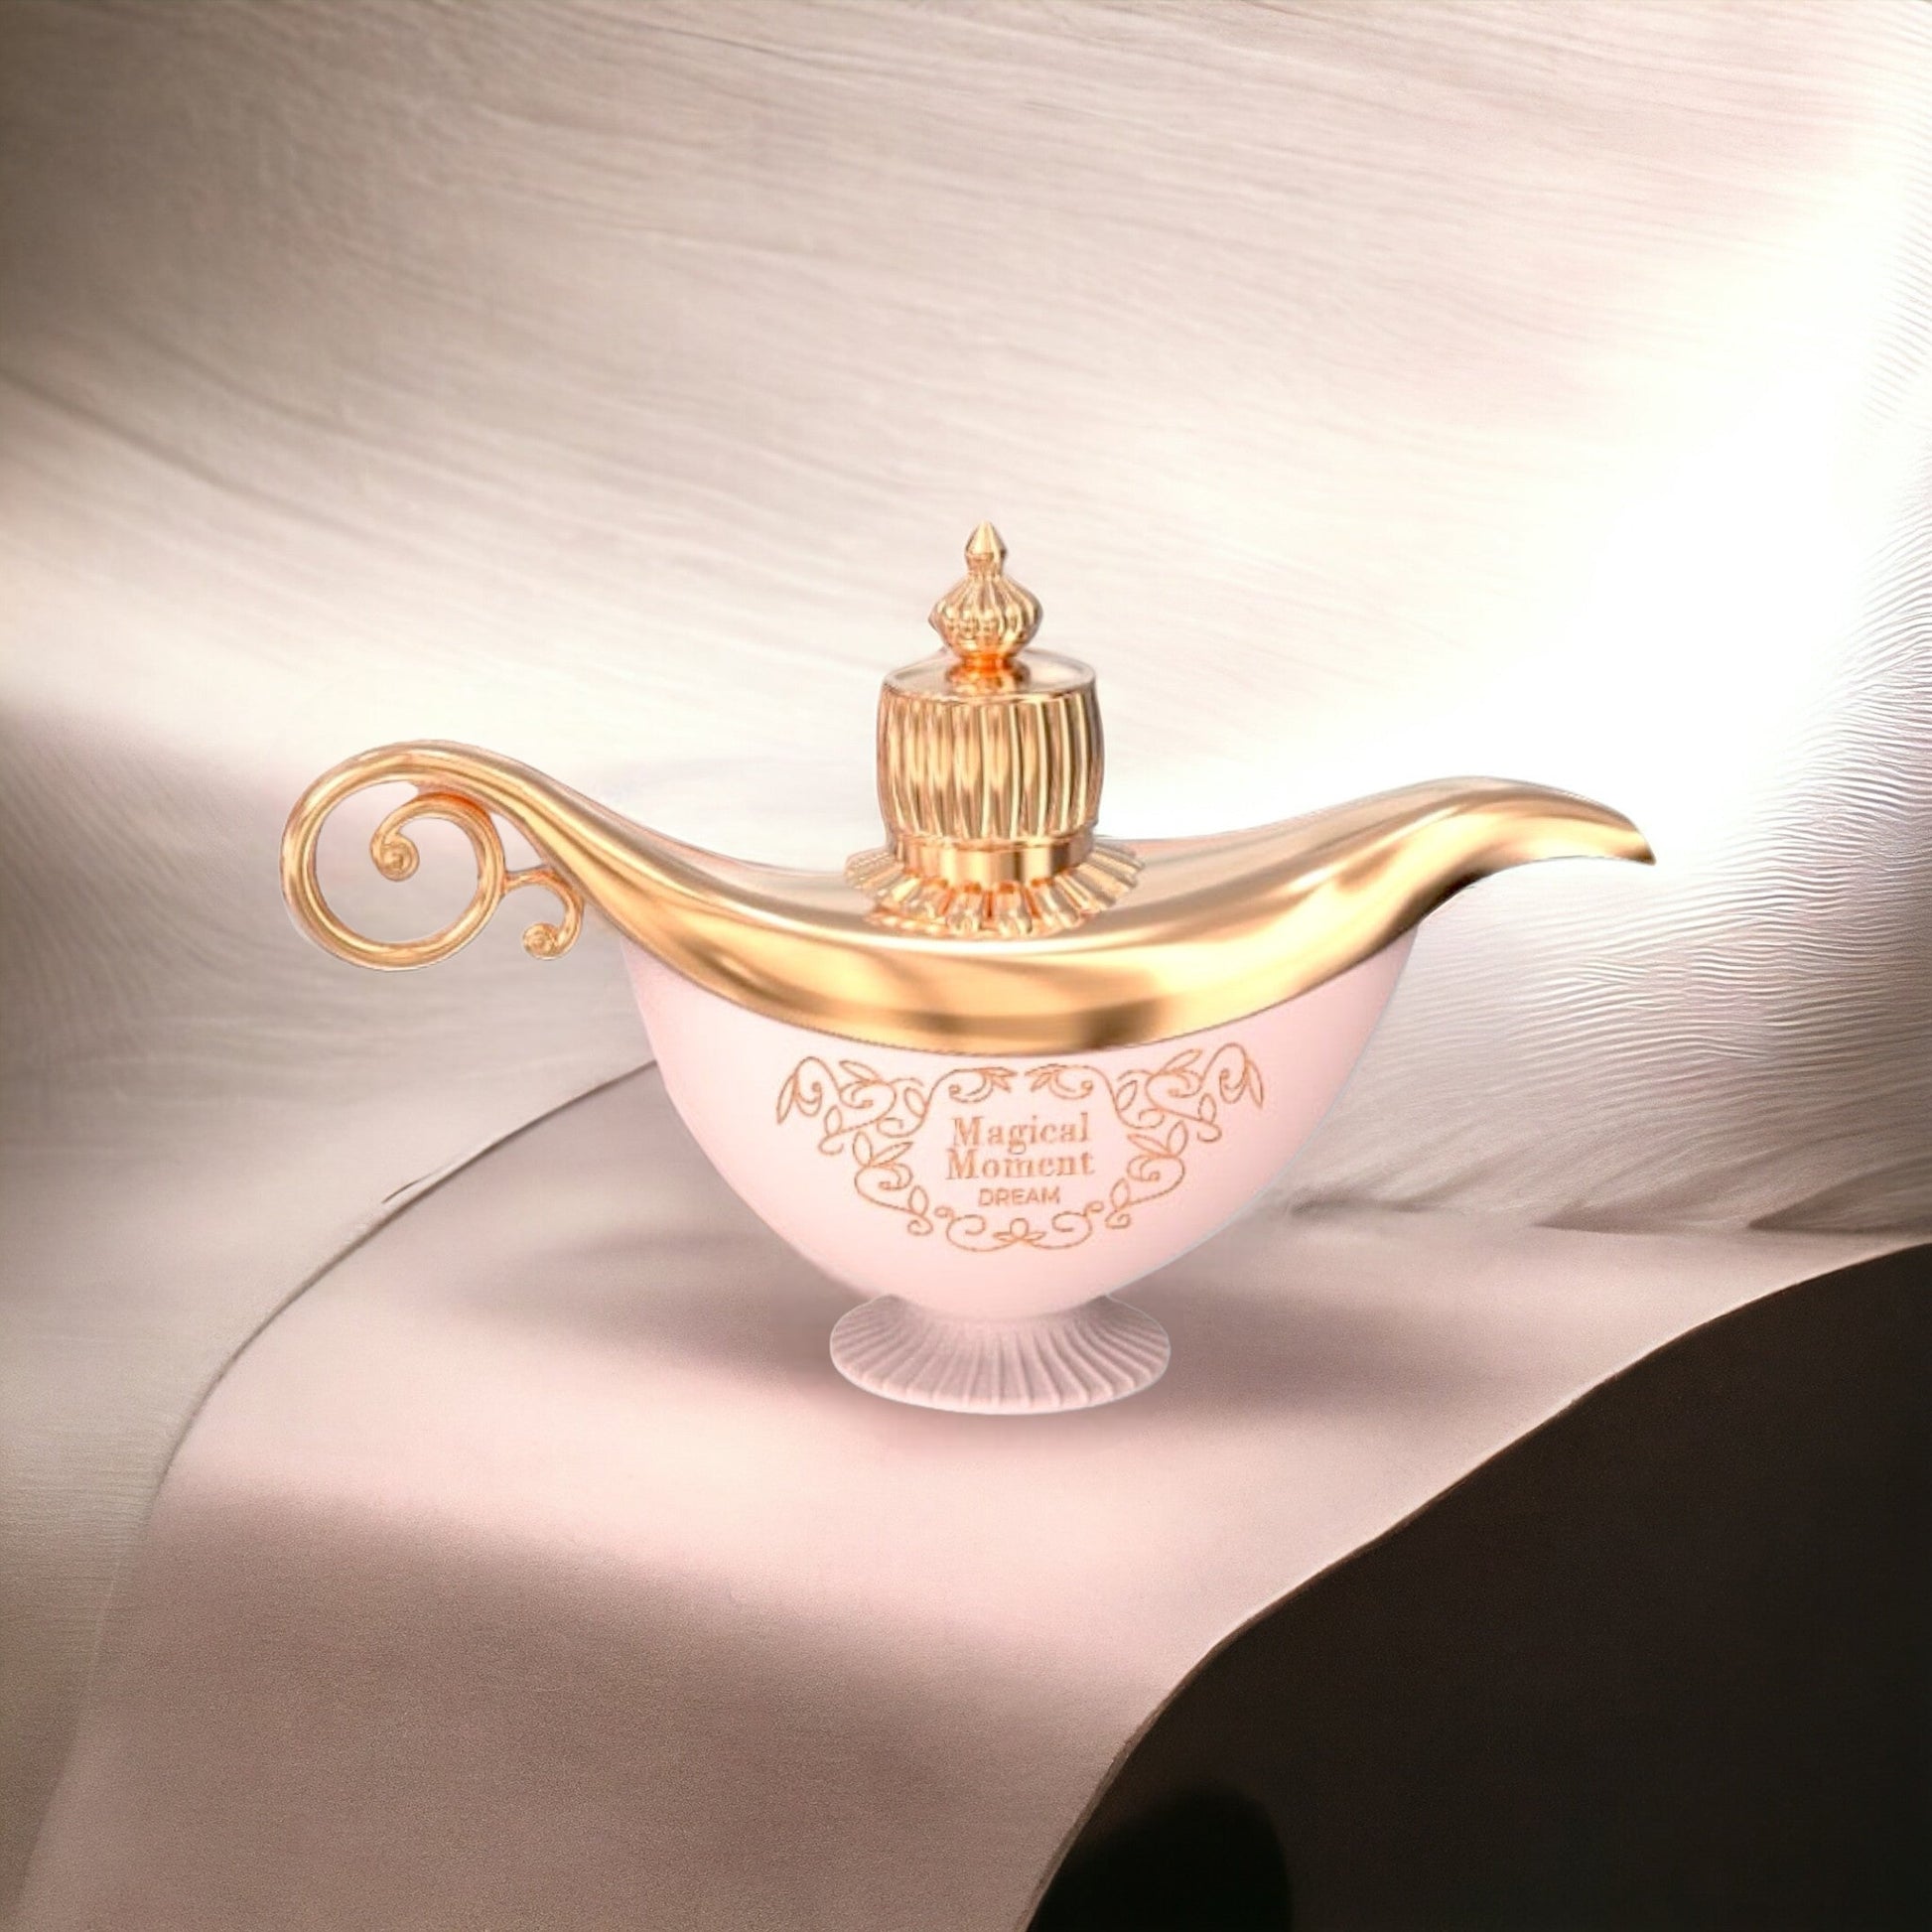 Magical Moment Dream By Le Chameau Eau de Parfum 2.8 Fl.Oz For Women